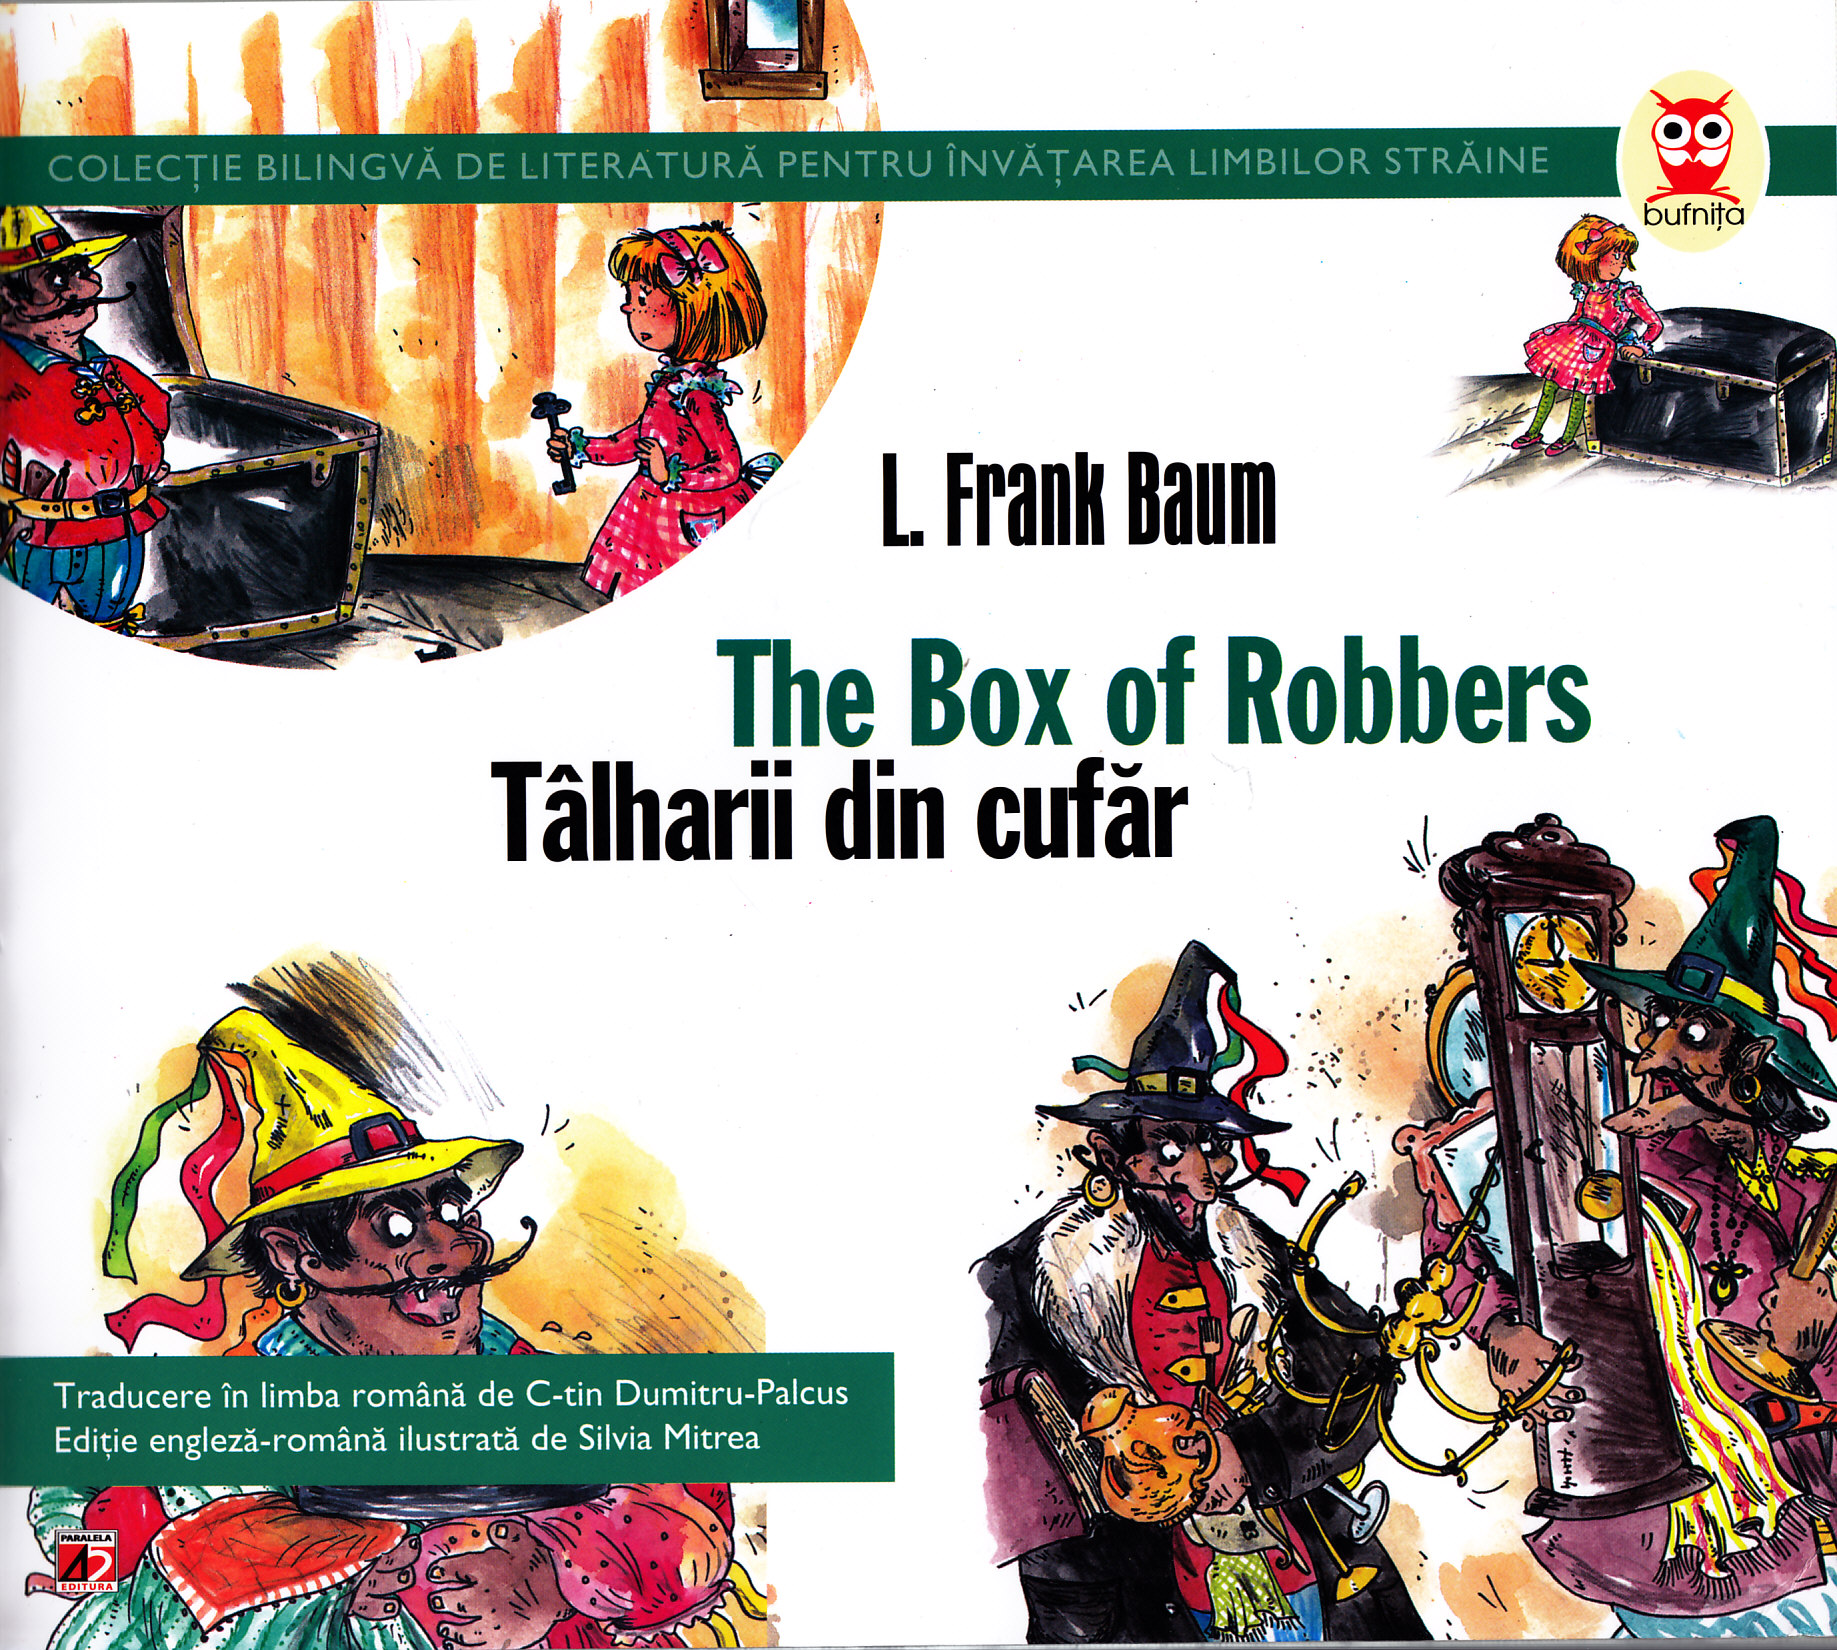 Talharii din cufar. The box of robbers - L. Frank Baum